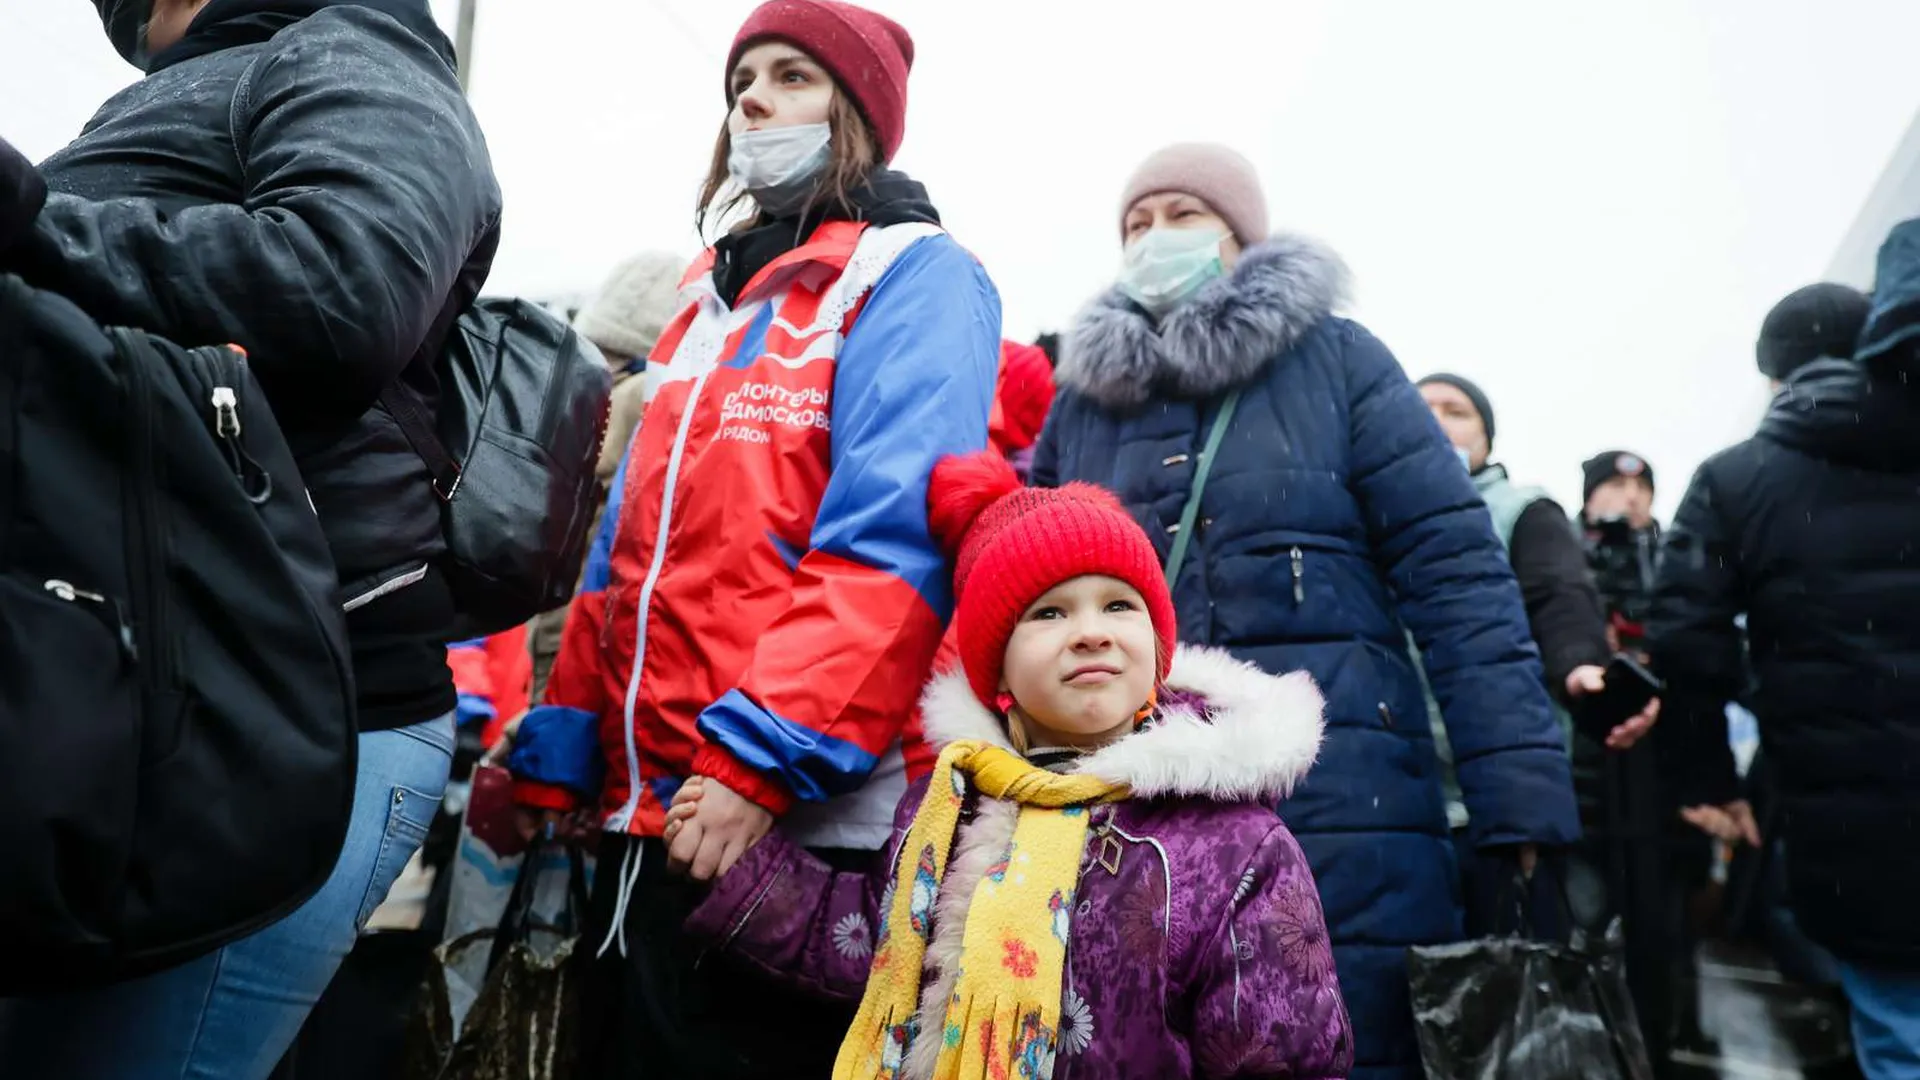 Чтобы жизнь продолжалась мирно. Скворцова пообещала беженцам из Донбасса в Подмосковье помощь